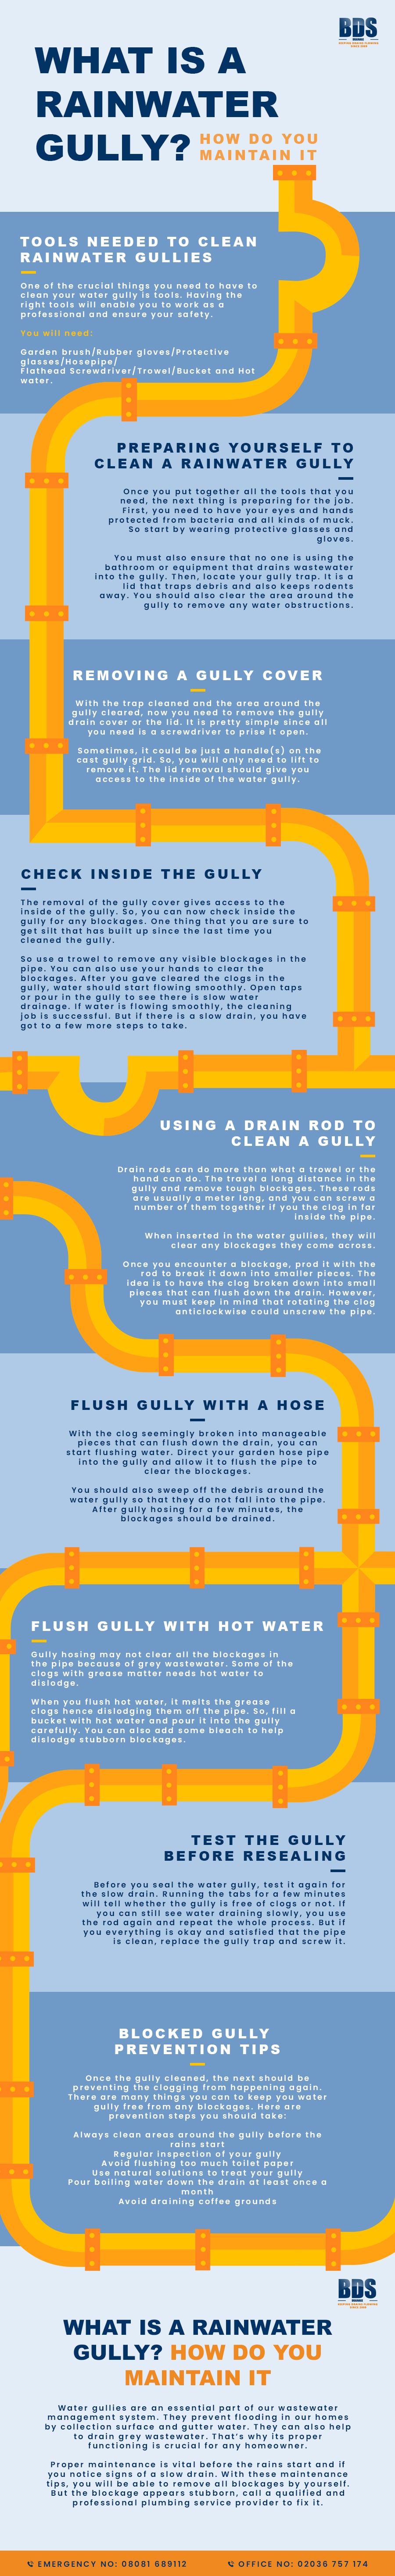 rainwater gully infographic